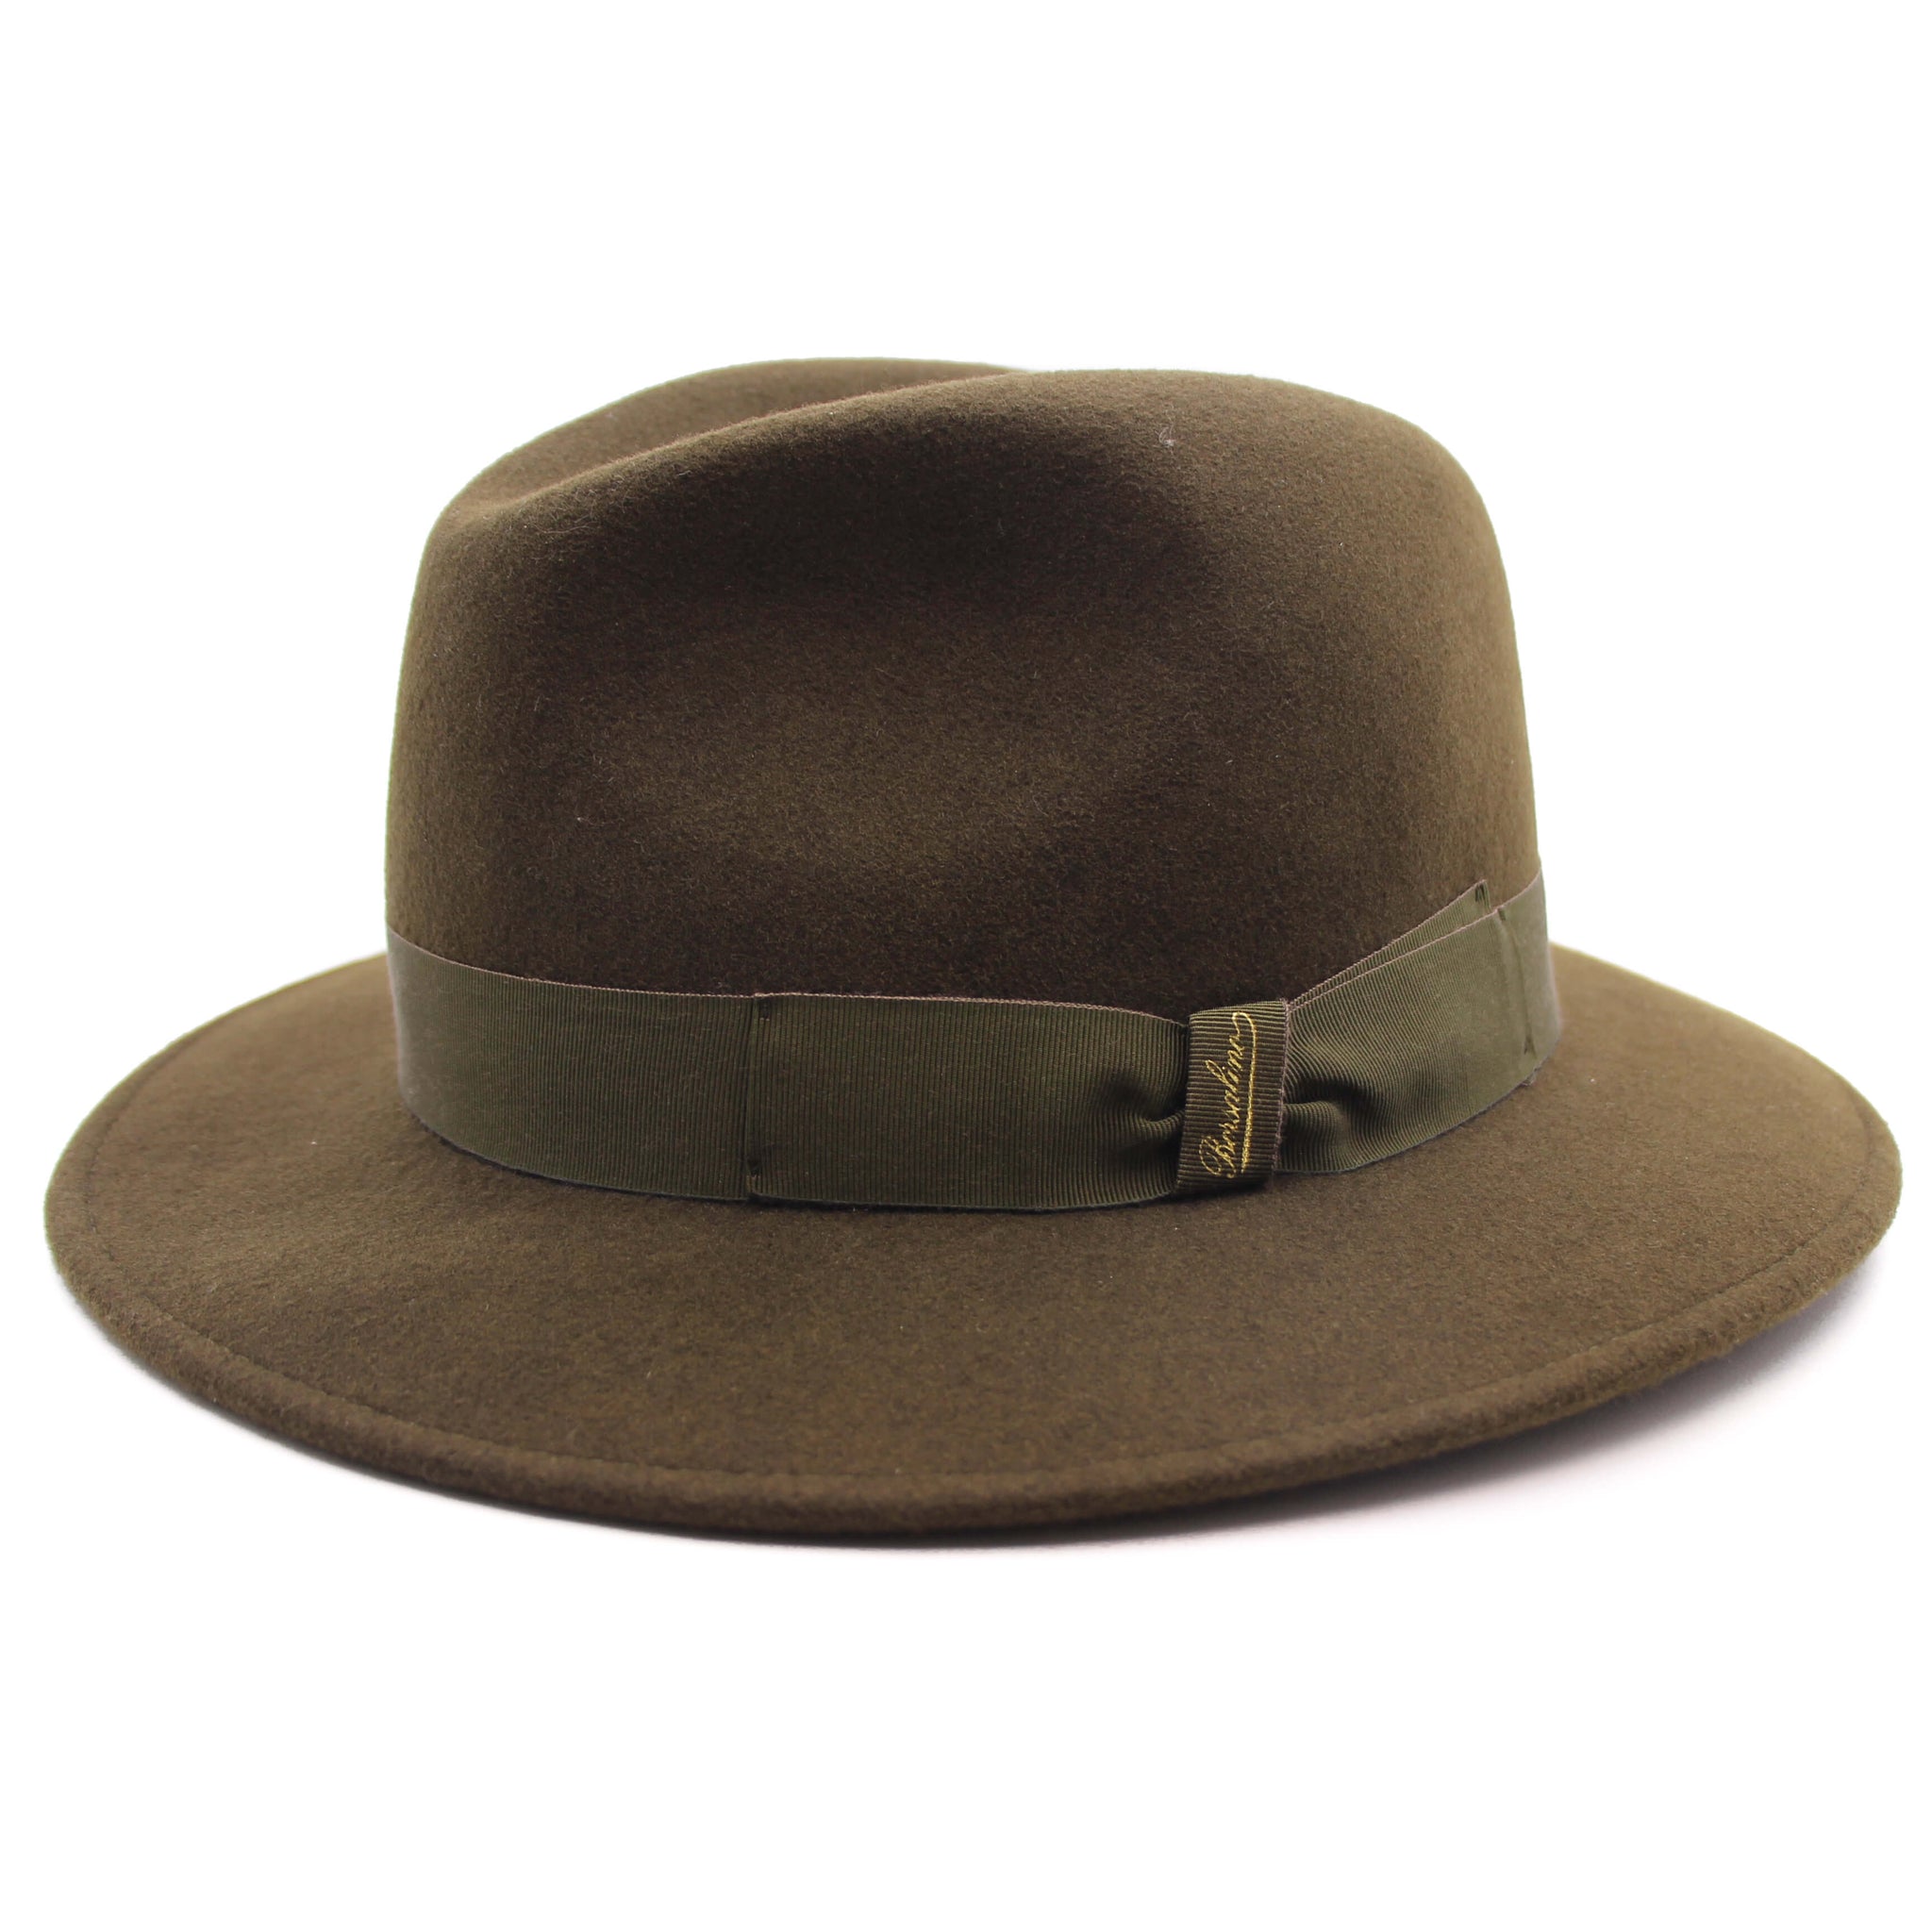 Luipaard de eerste Snazzy Outdoor hoed in merinoswol van Borsalino. – Petcap